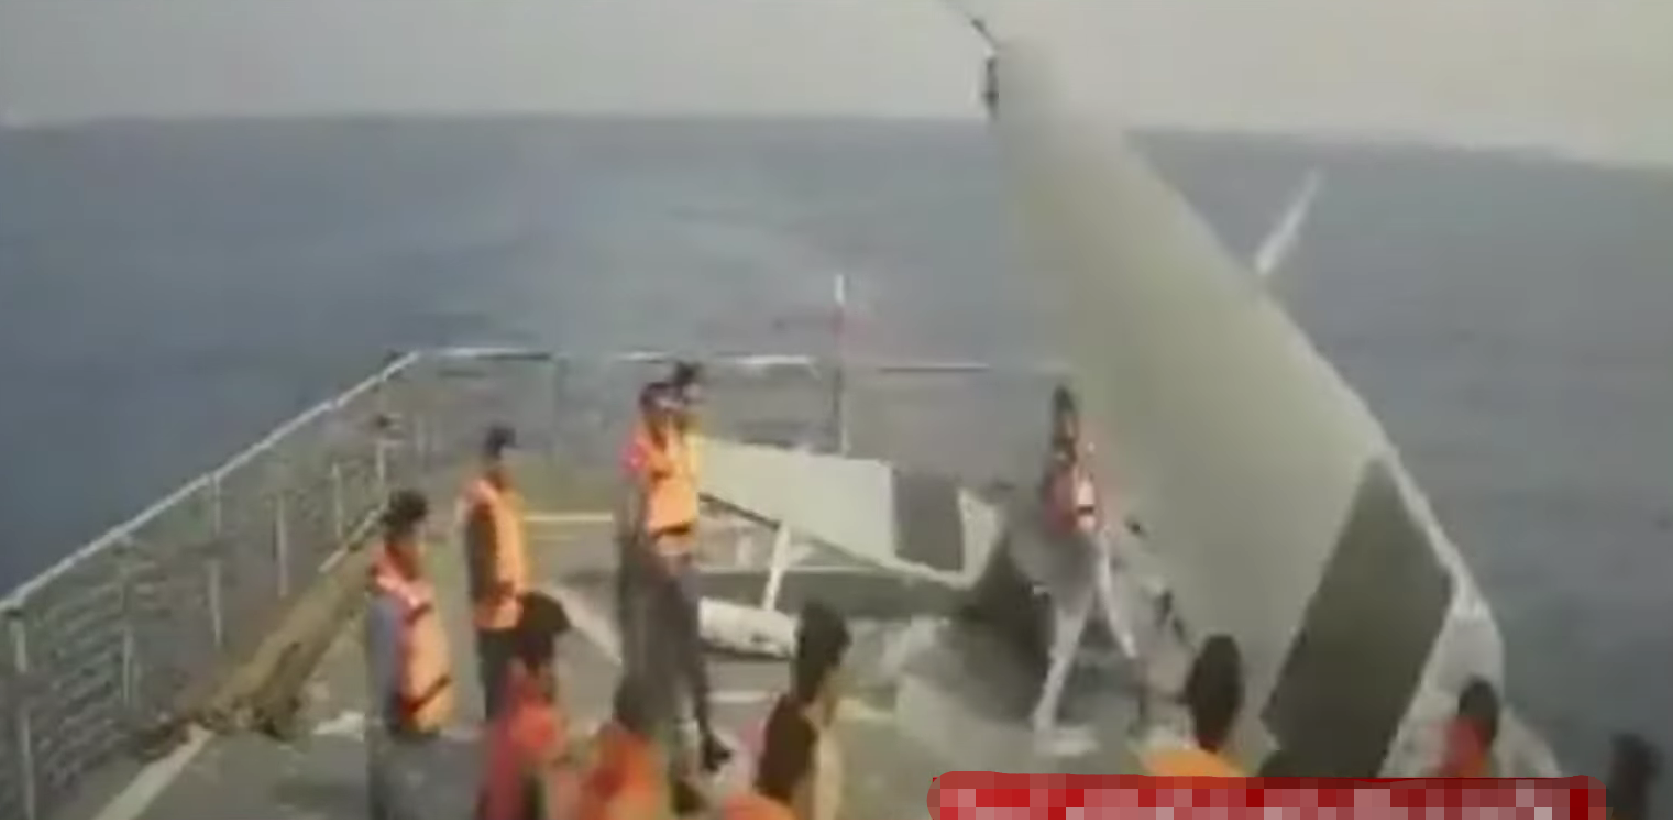 伊朗人员将捕获的美军无人艇推下甲板（伊朗国家电视台）